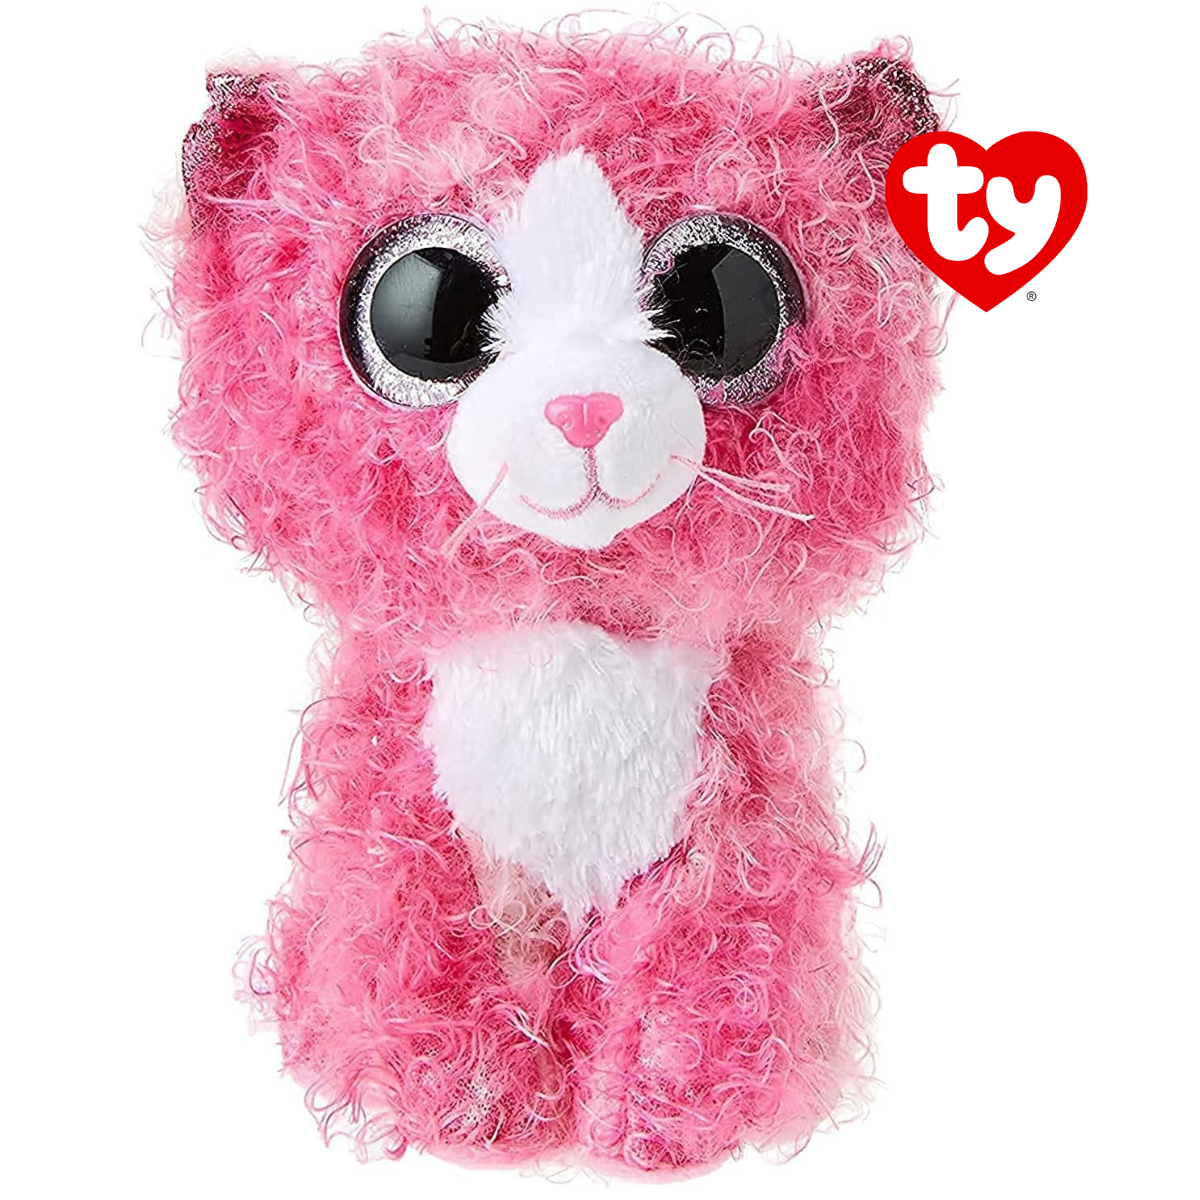 Ty - peluche - beanie boos - gatto -reagan - rosa e bianco - orecchie e occhi rosa glitter - il peluche con gli occhi grandi scintillanti - 15 cm - 36308 - TY